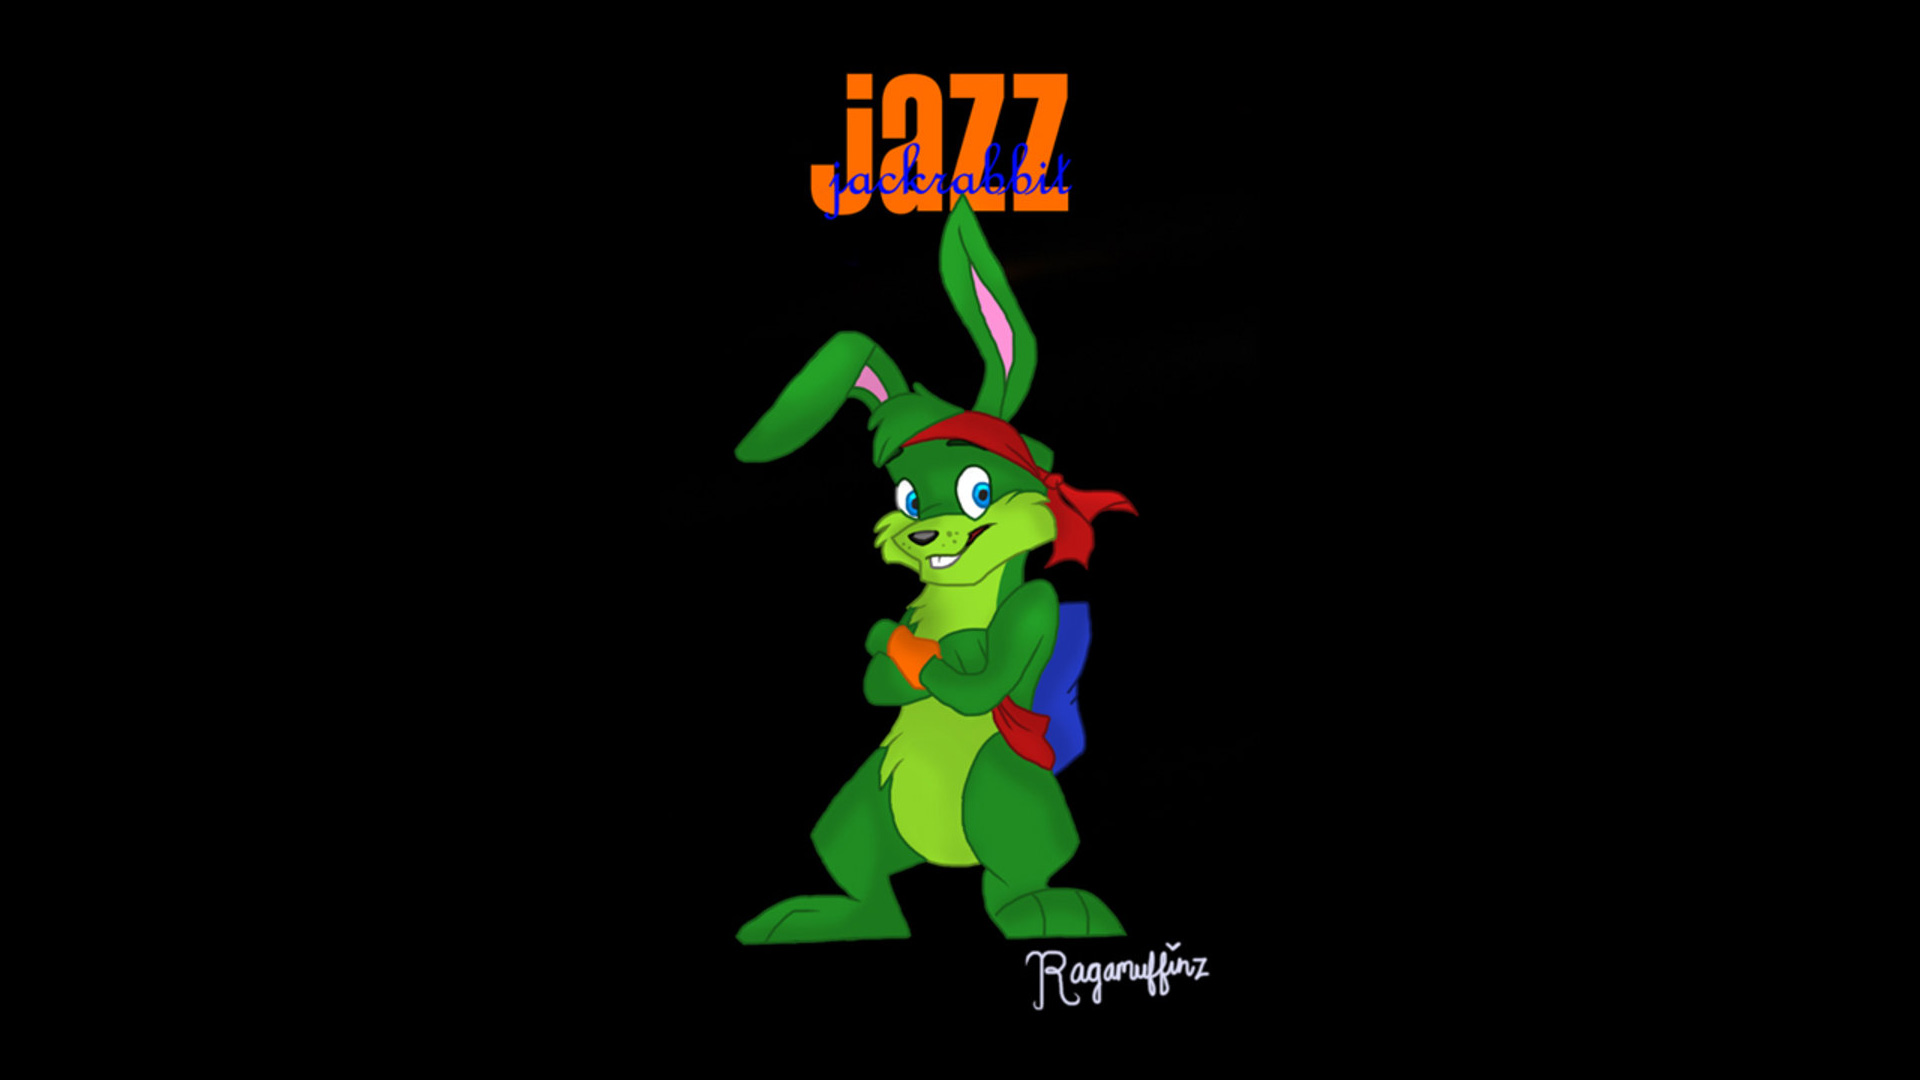 download jazz jackrabbit game